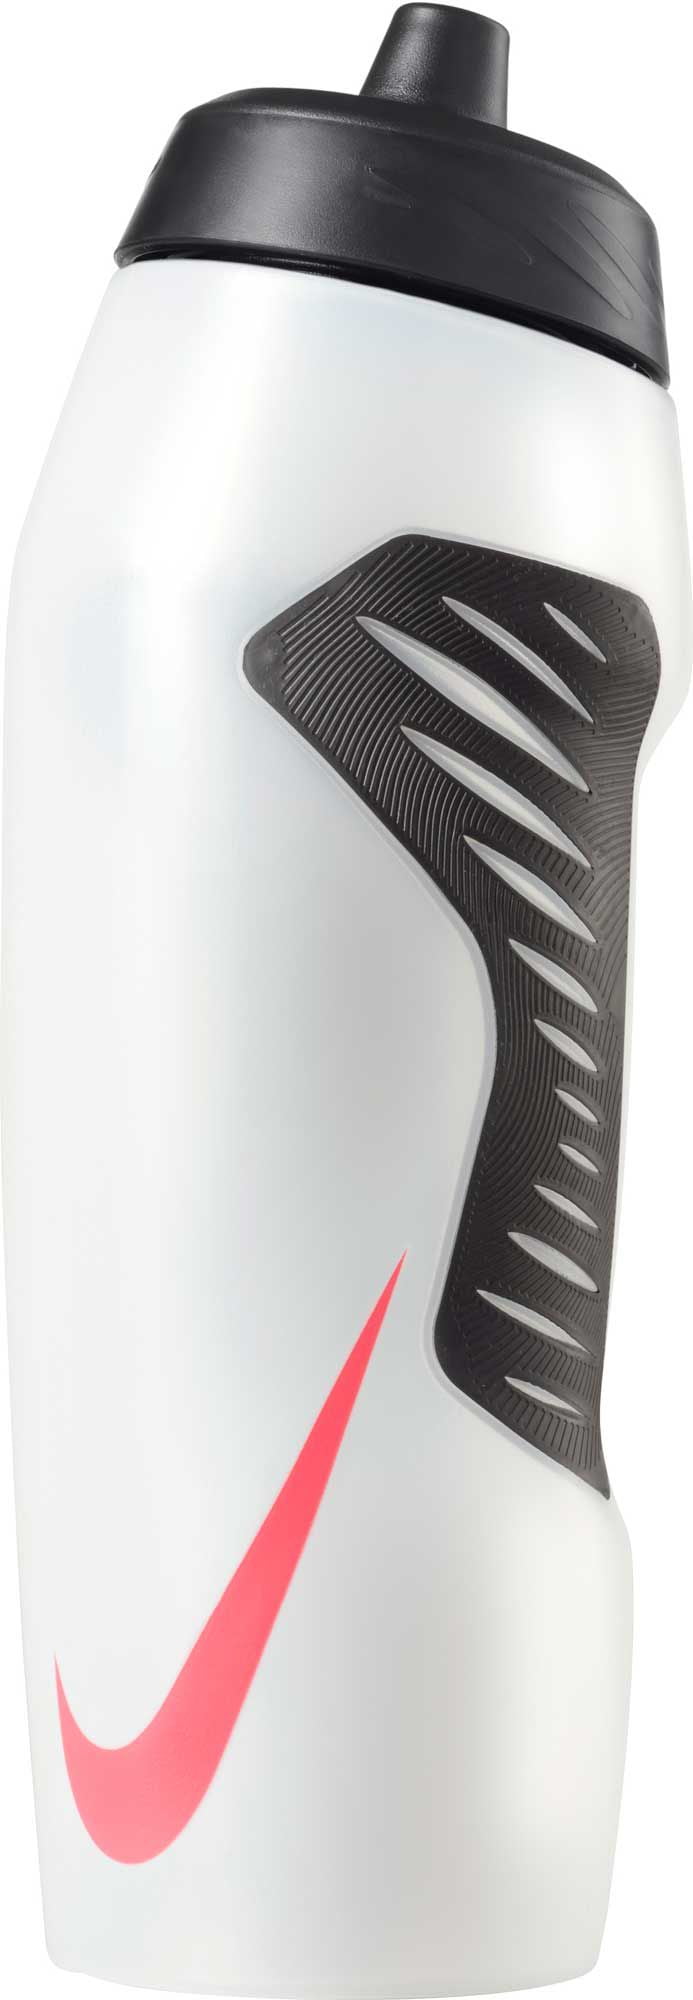 Nike Hyperfuel oz. Squeeze Water Bottle - Walmart.com